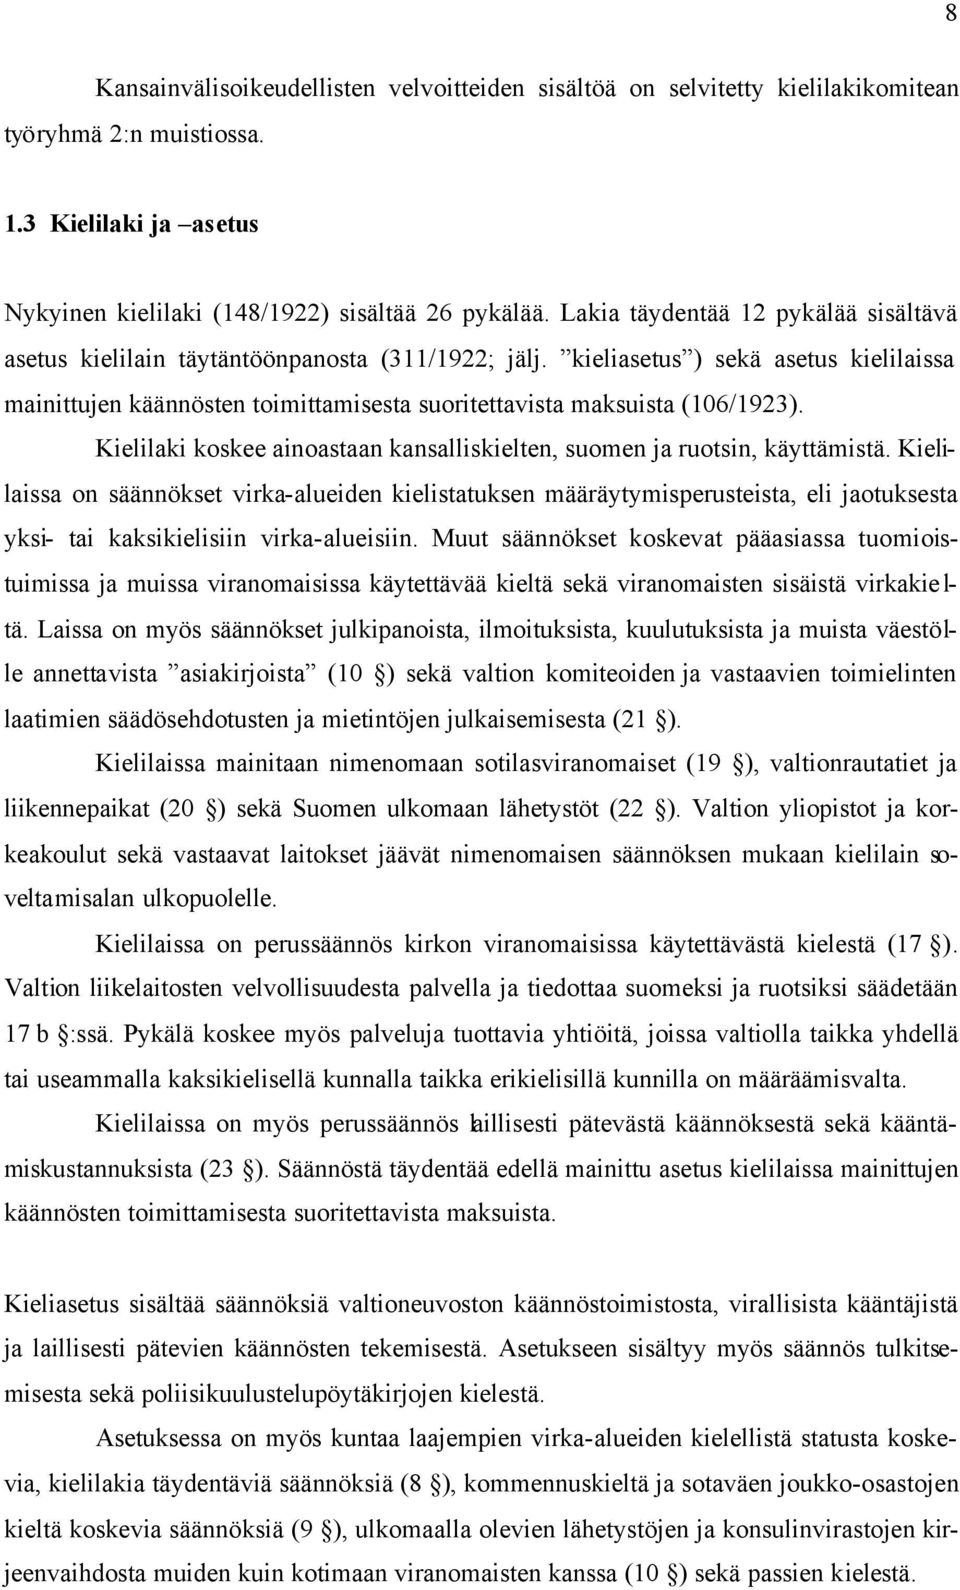 kieliasetus ) sekä asetus kielilaissa mainittujen käännösten toimittamisesta suoritettavista maksuista (106/1923). Kielilaki koskee ainoastaan kansalliskielten, suomen ja ruotsin, käyttämistä.